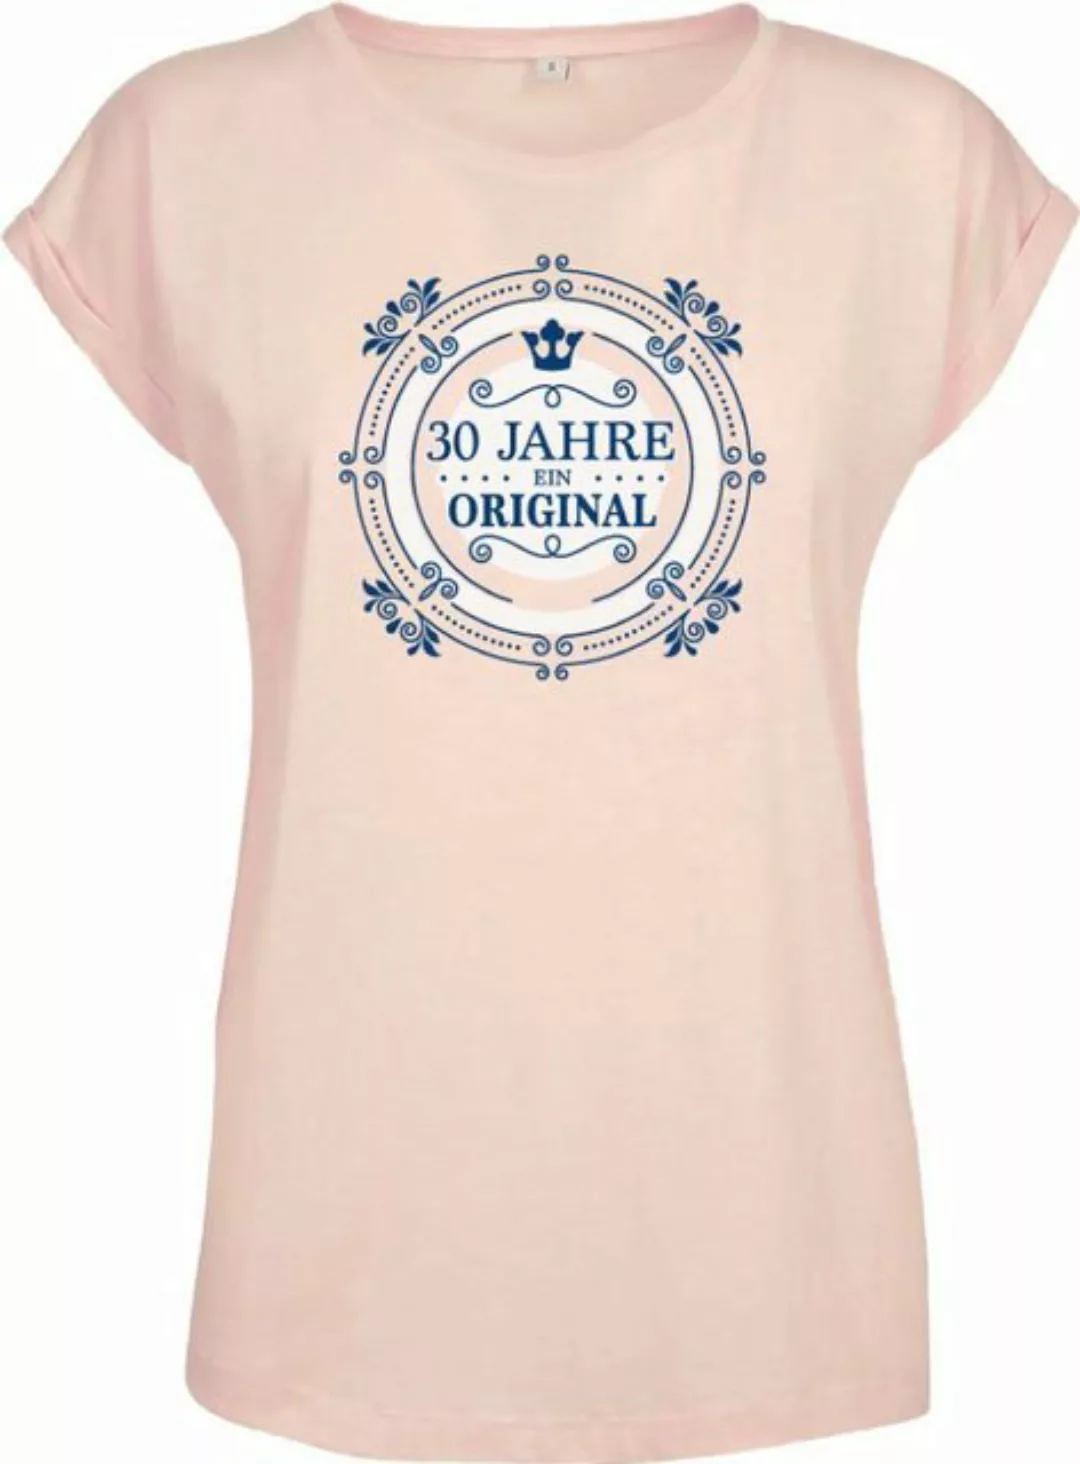 Baddery Print-Shirt Geburtstagsgeschenk für Frauen : 30 Jahre Ein Original günstig online kaufen